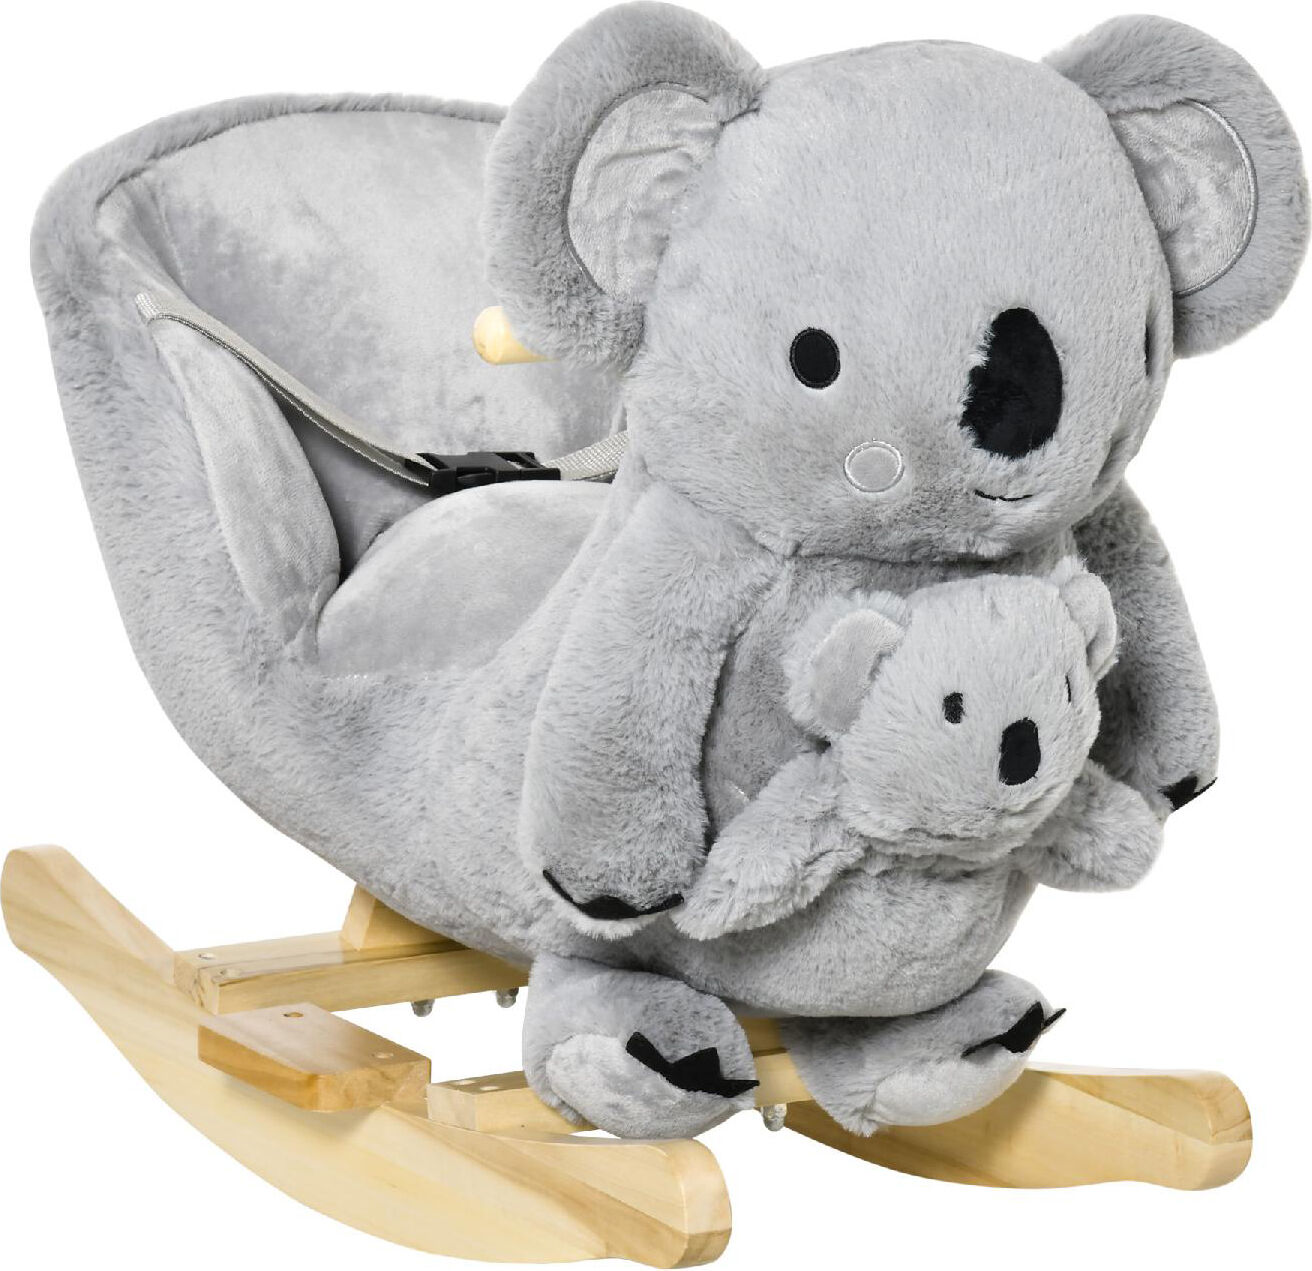 dechome 137/330 dondolo koala peluche in legno cavalcabile per bambini da 3+ anni colore grigio - 137/330